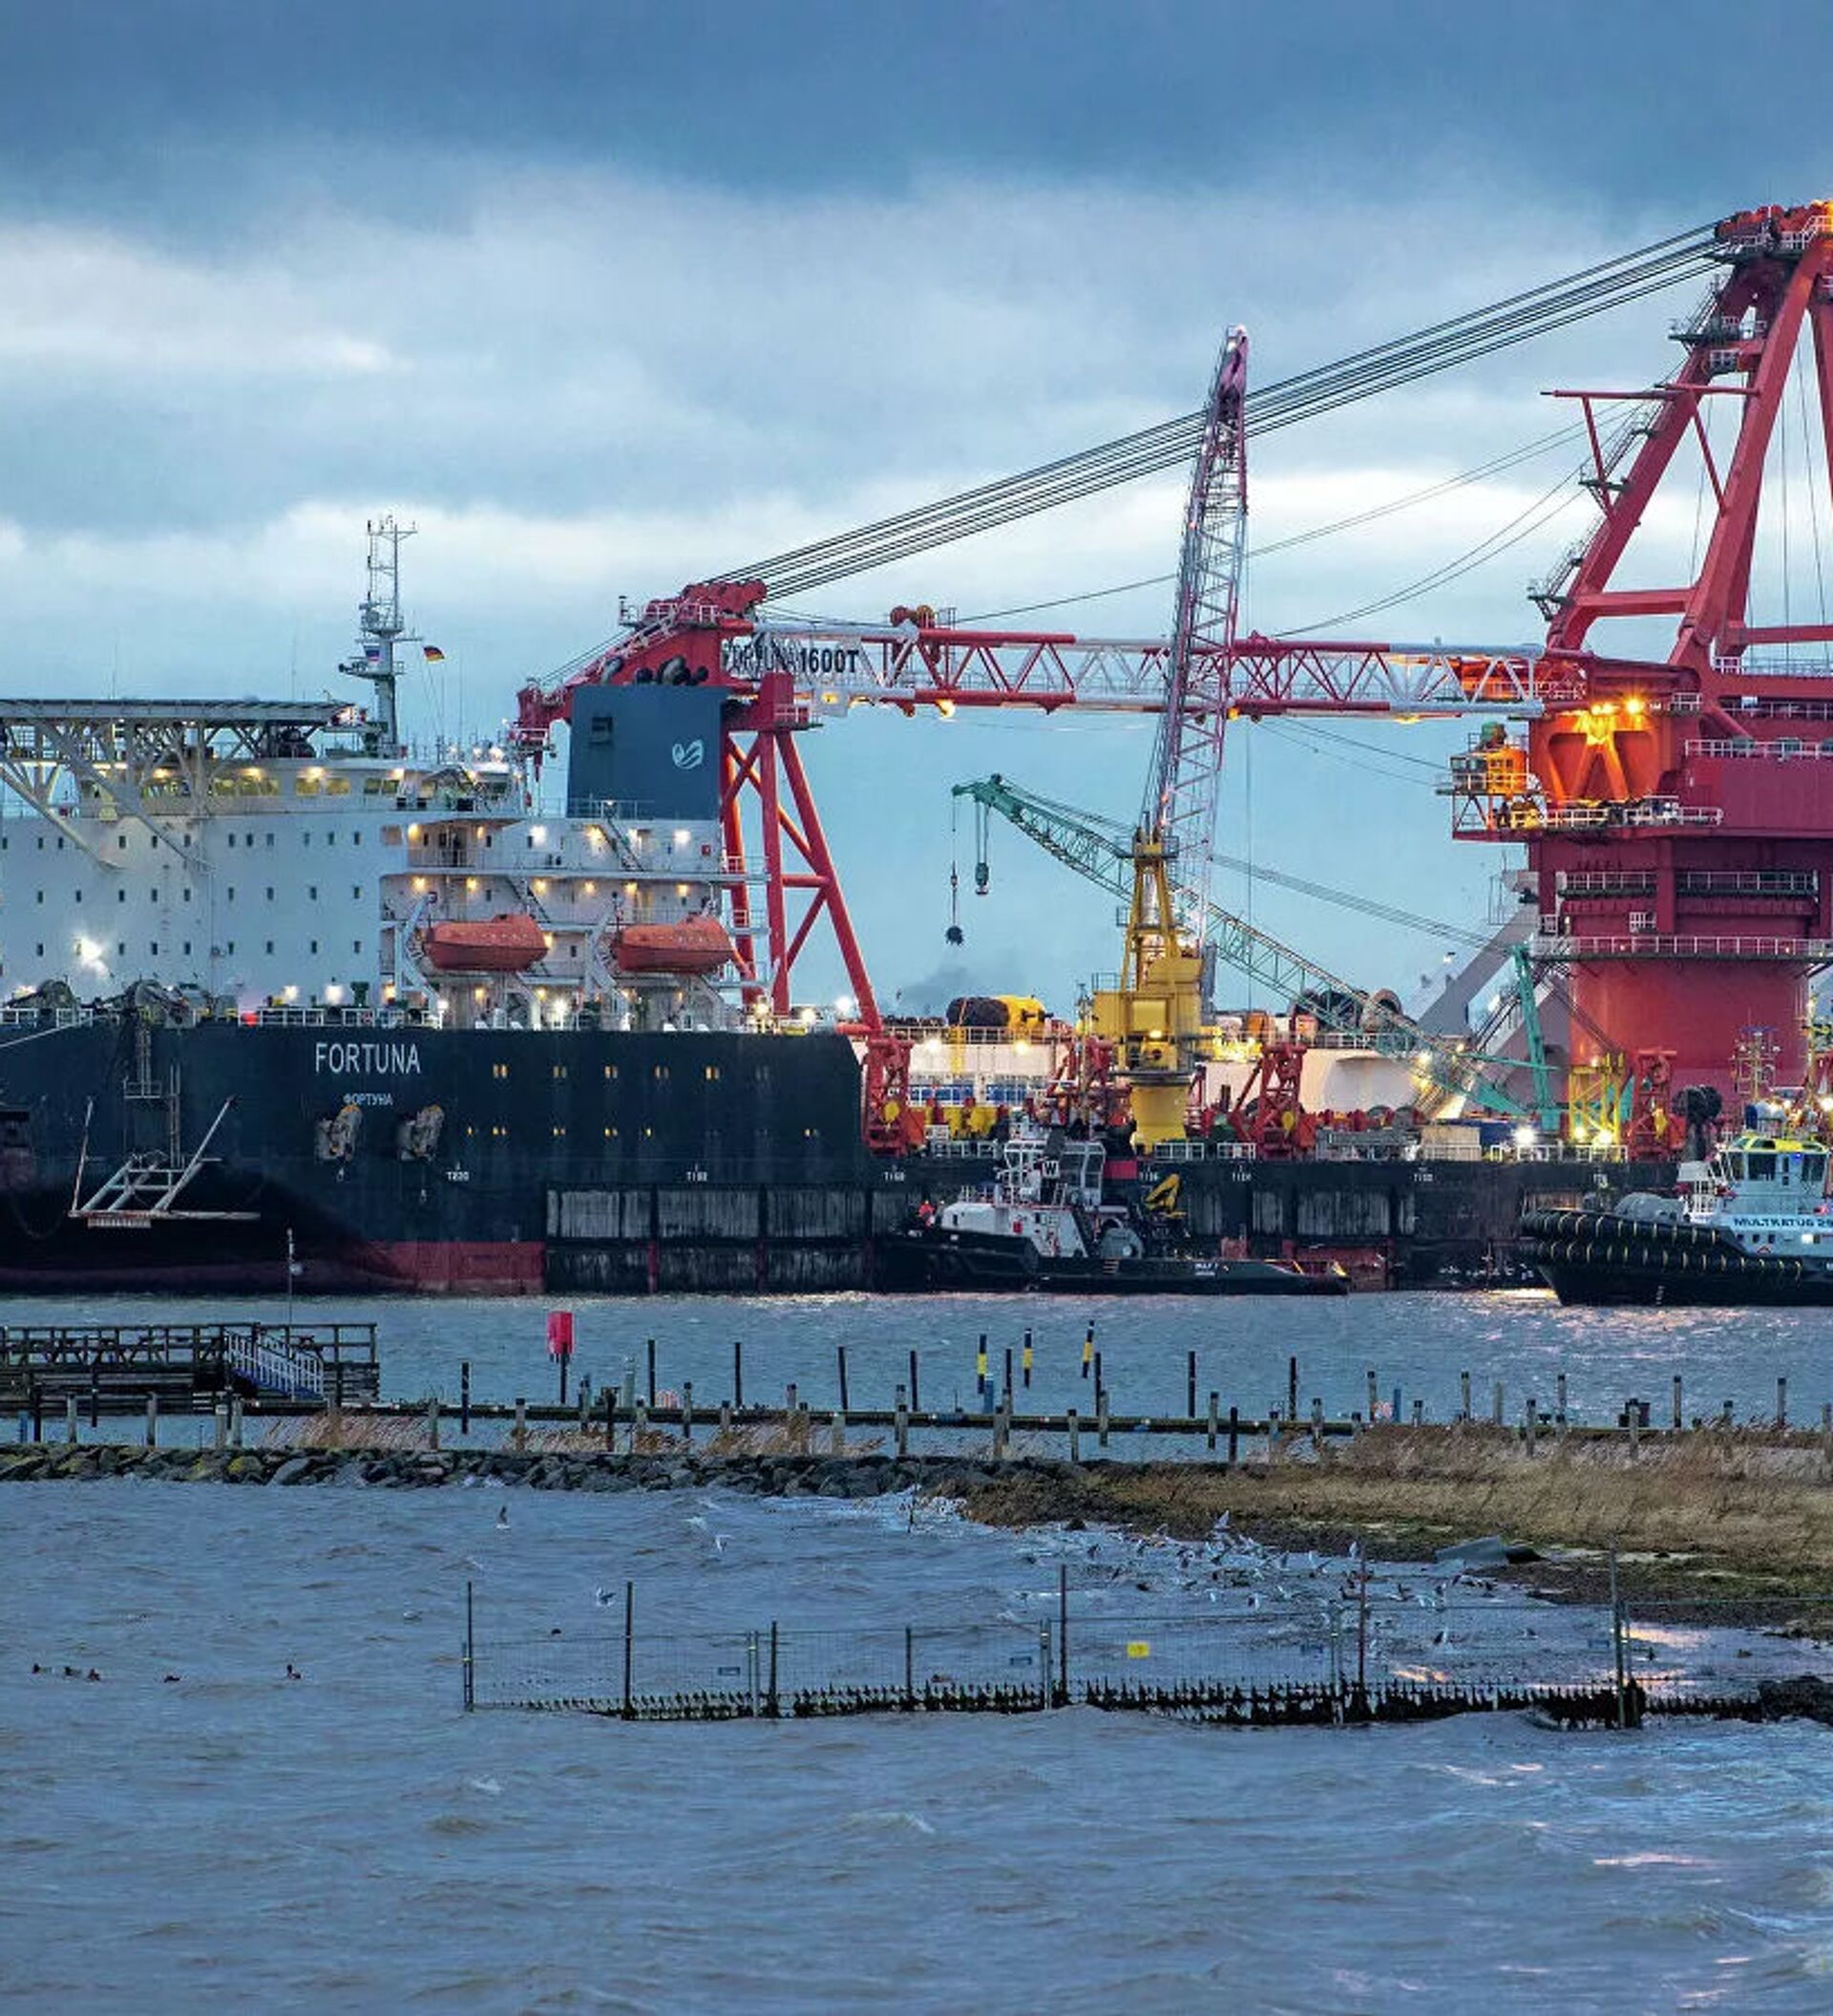 北溪2号项目复工幸运号铺管船开始在丹麦水域作业 - 2021年1月25日, 俄罗斯卫星通讯社